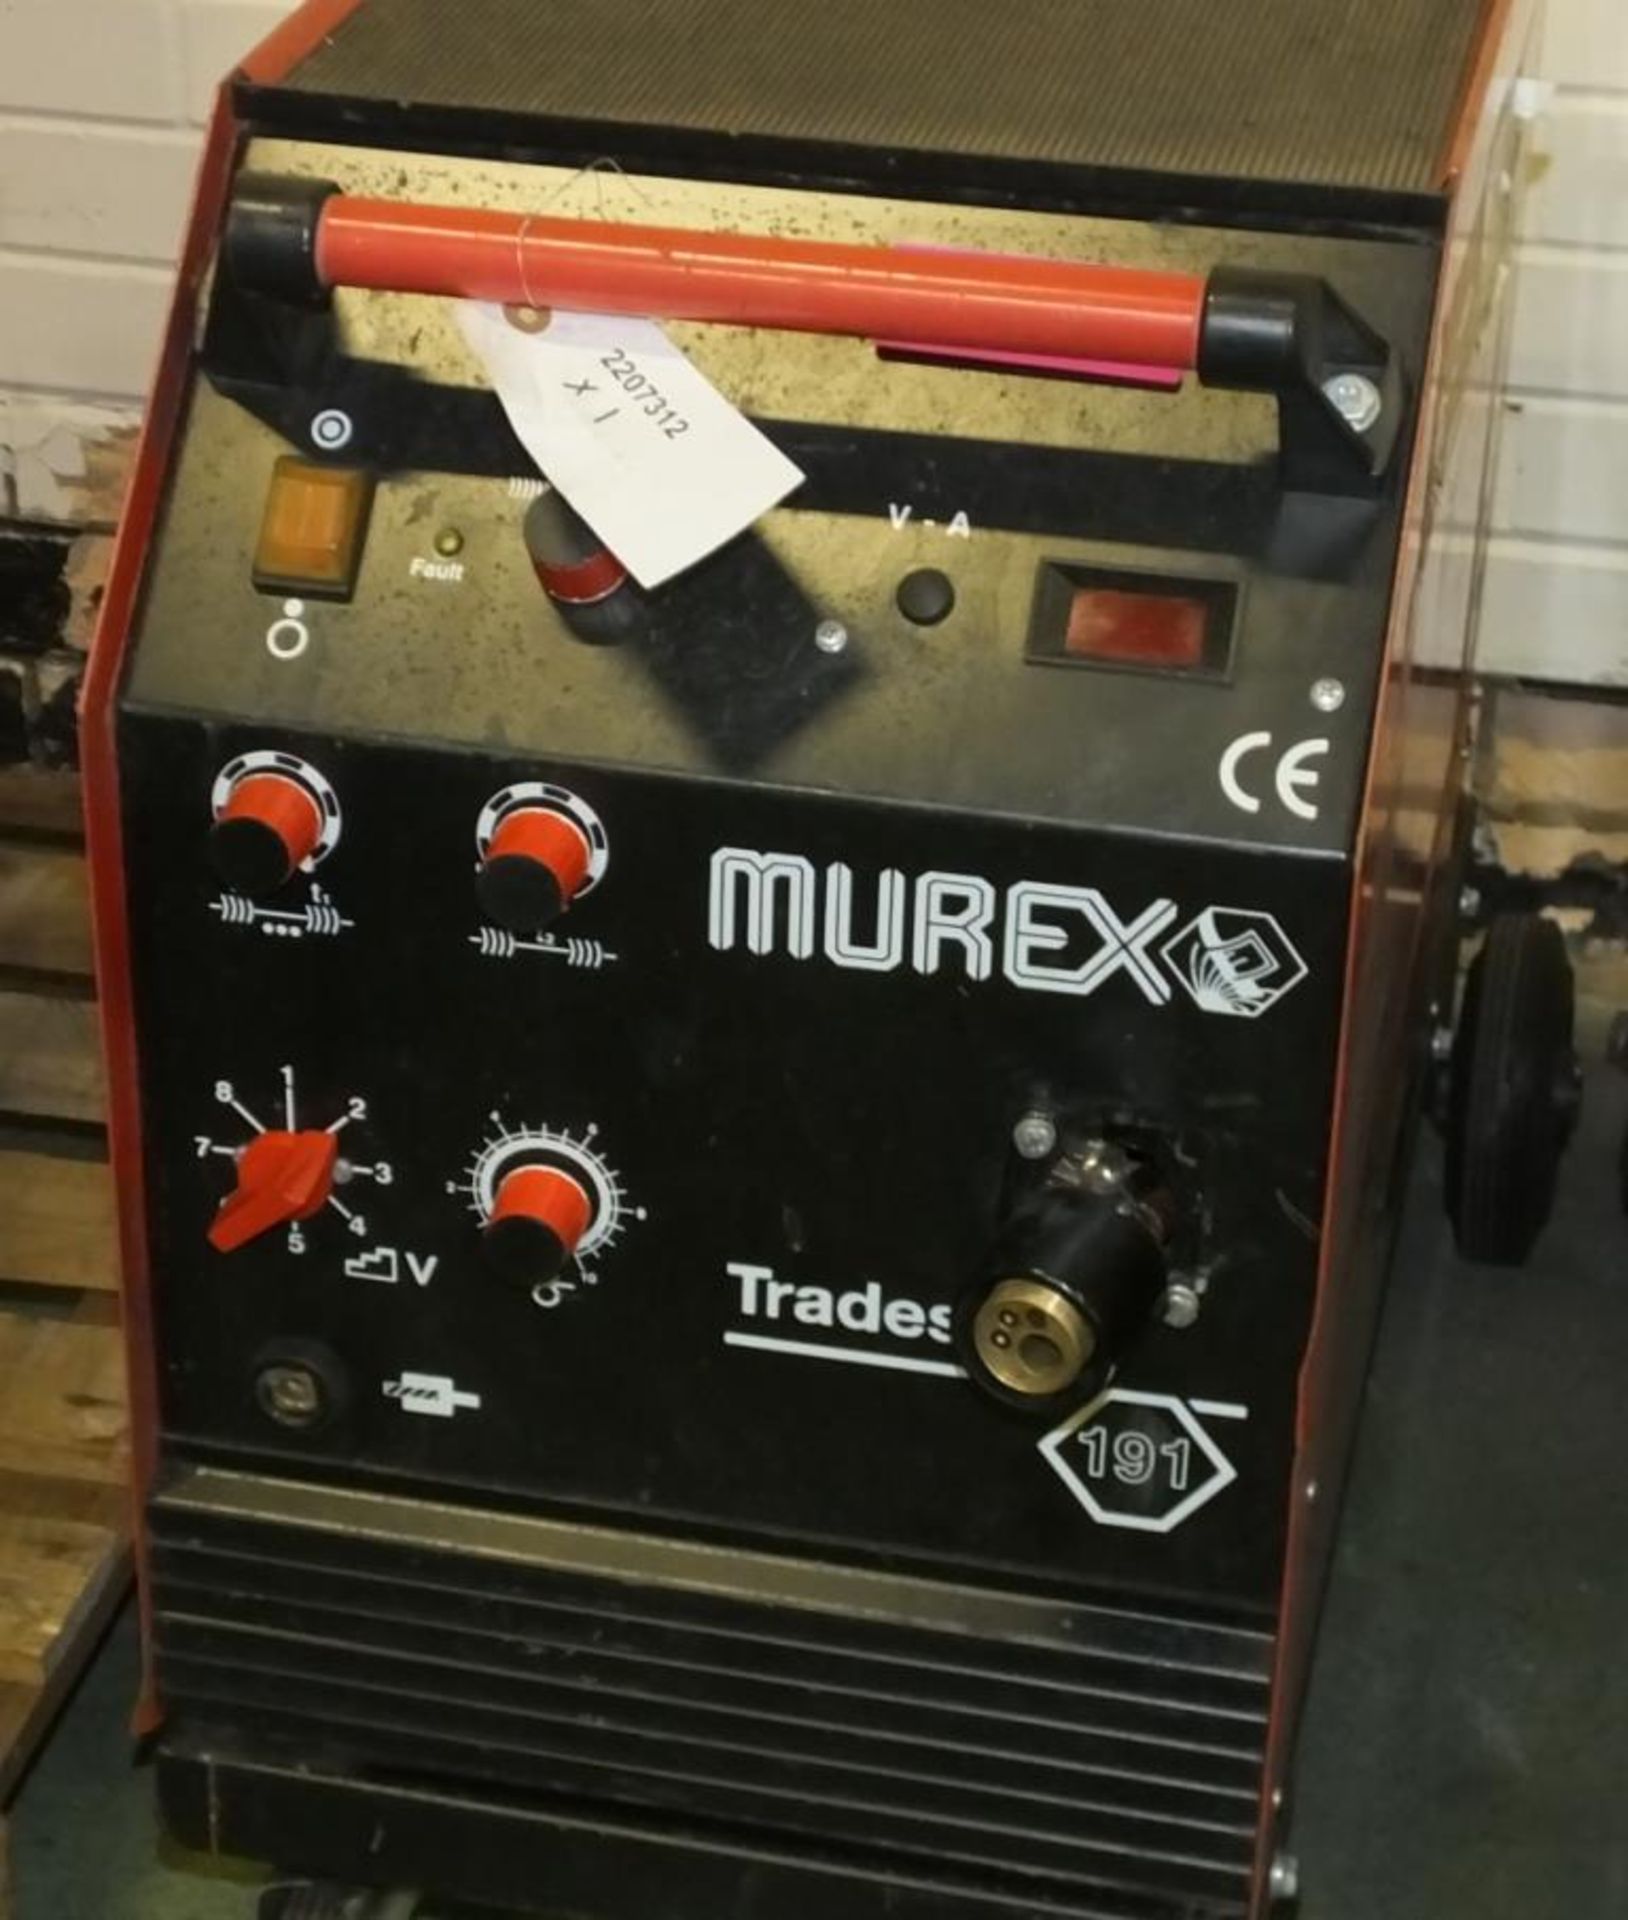 Murex TradesMig 191 Welding Set - no accessories - Image 2 of 2